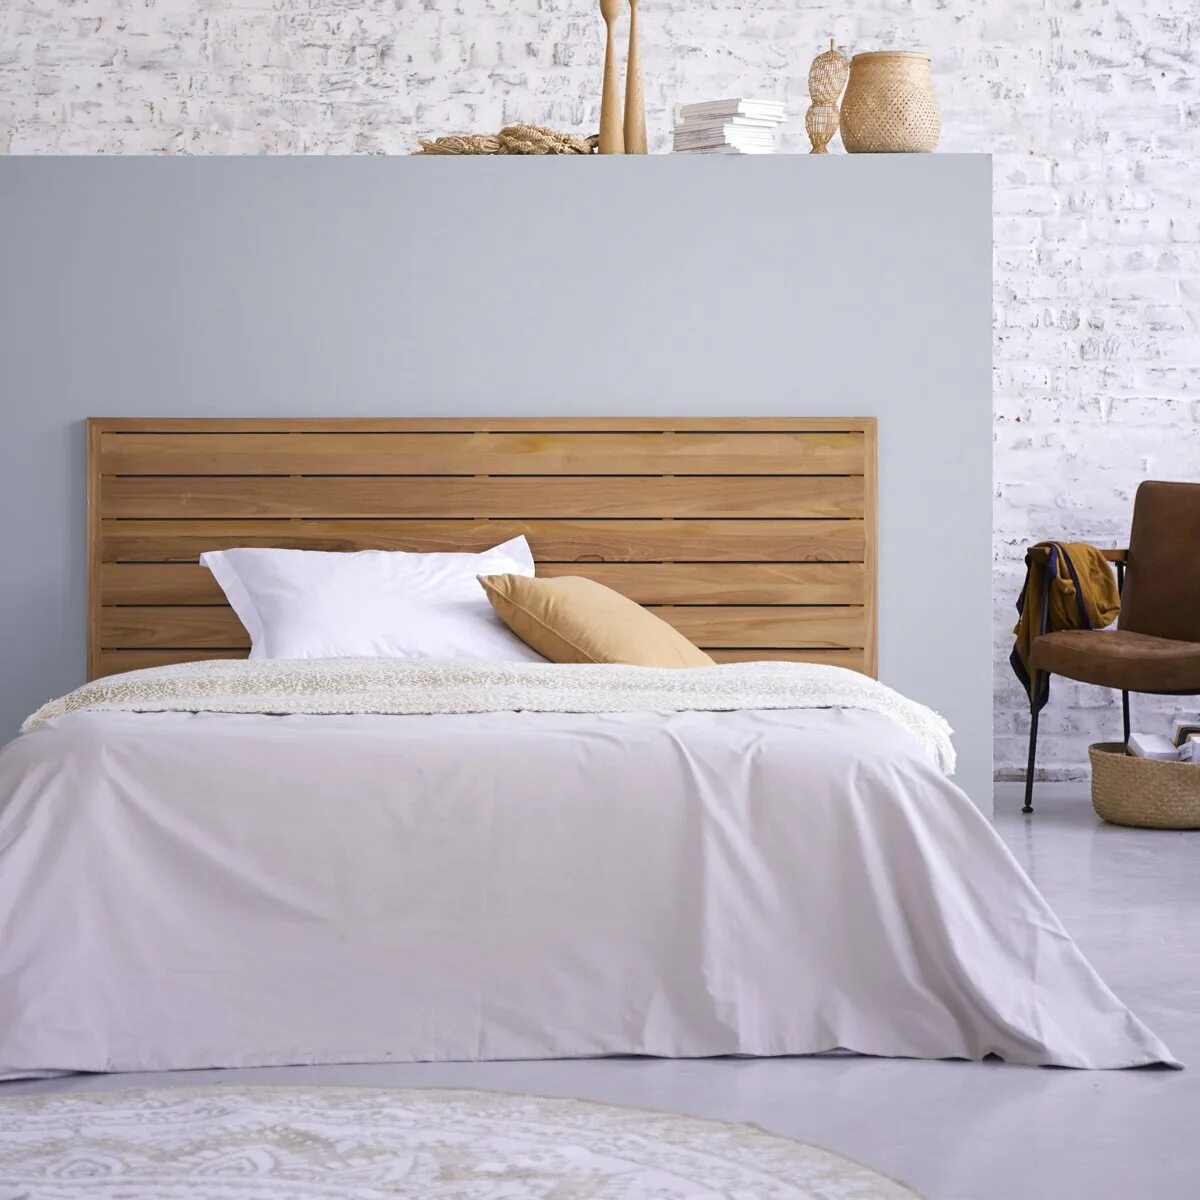 Изголовье кровати из дерева. Изголовье МАЛЬМ икеа. Кровать с деревянным изголовьем. Кроватное изголовье из дерева.